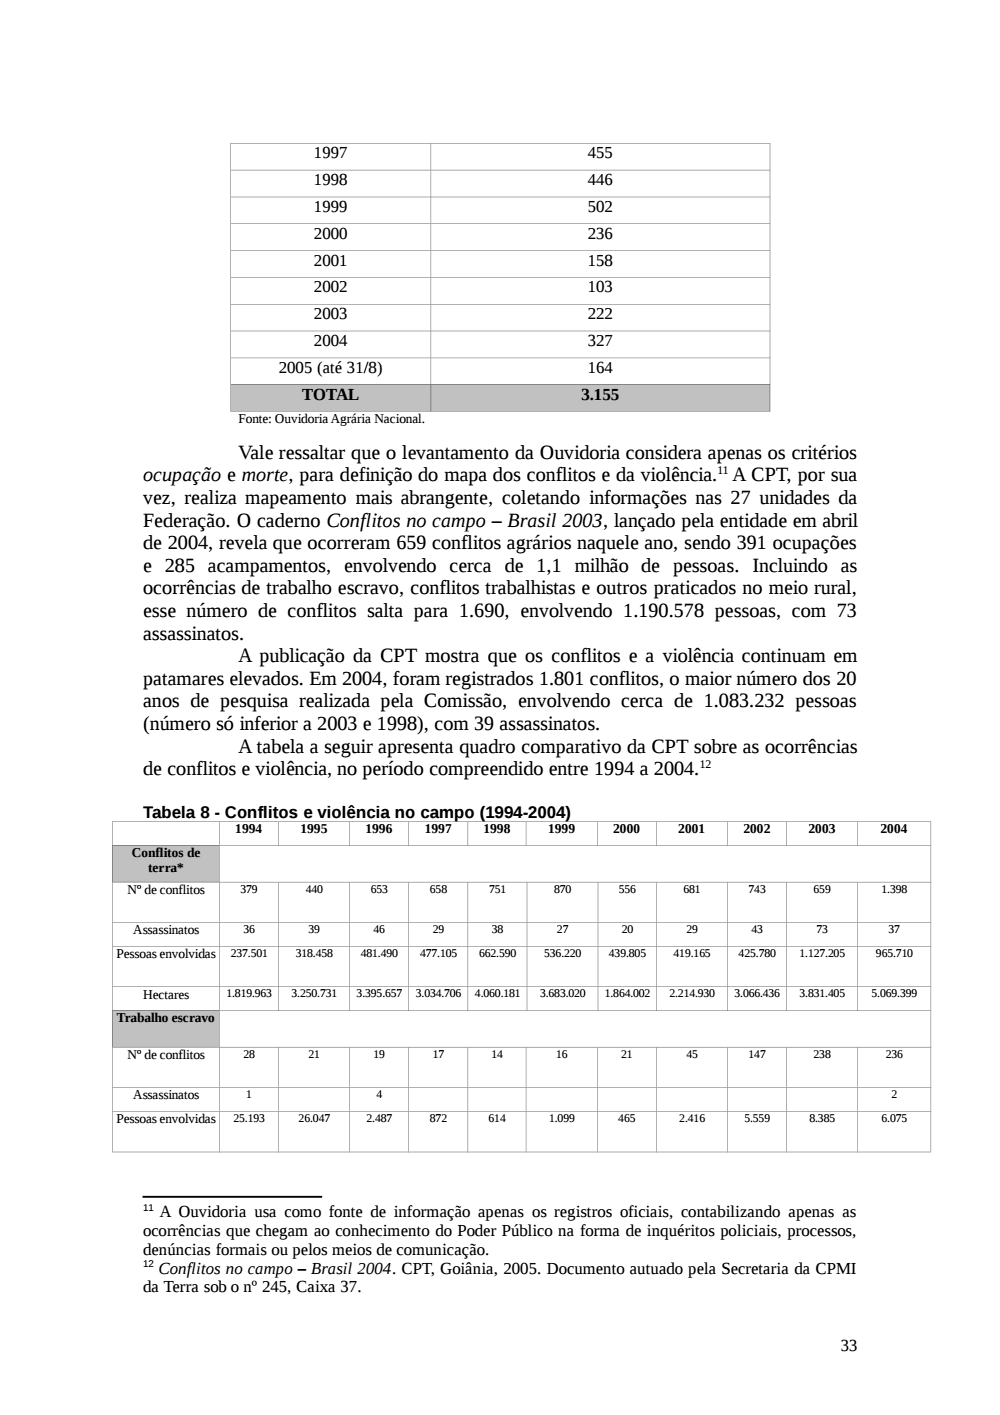 Page 33 from Relatório final da comissão